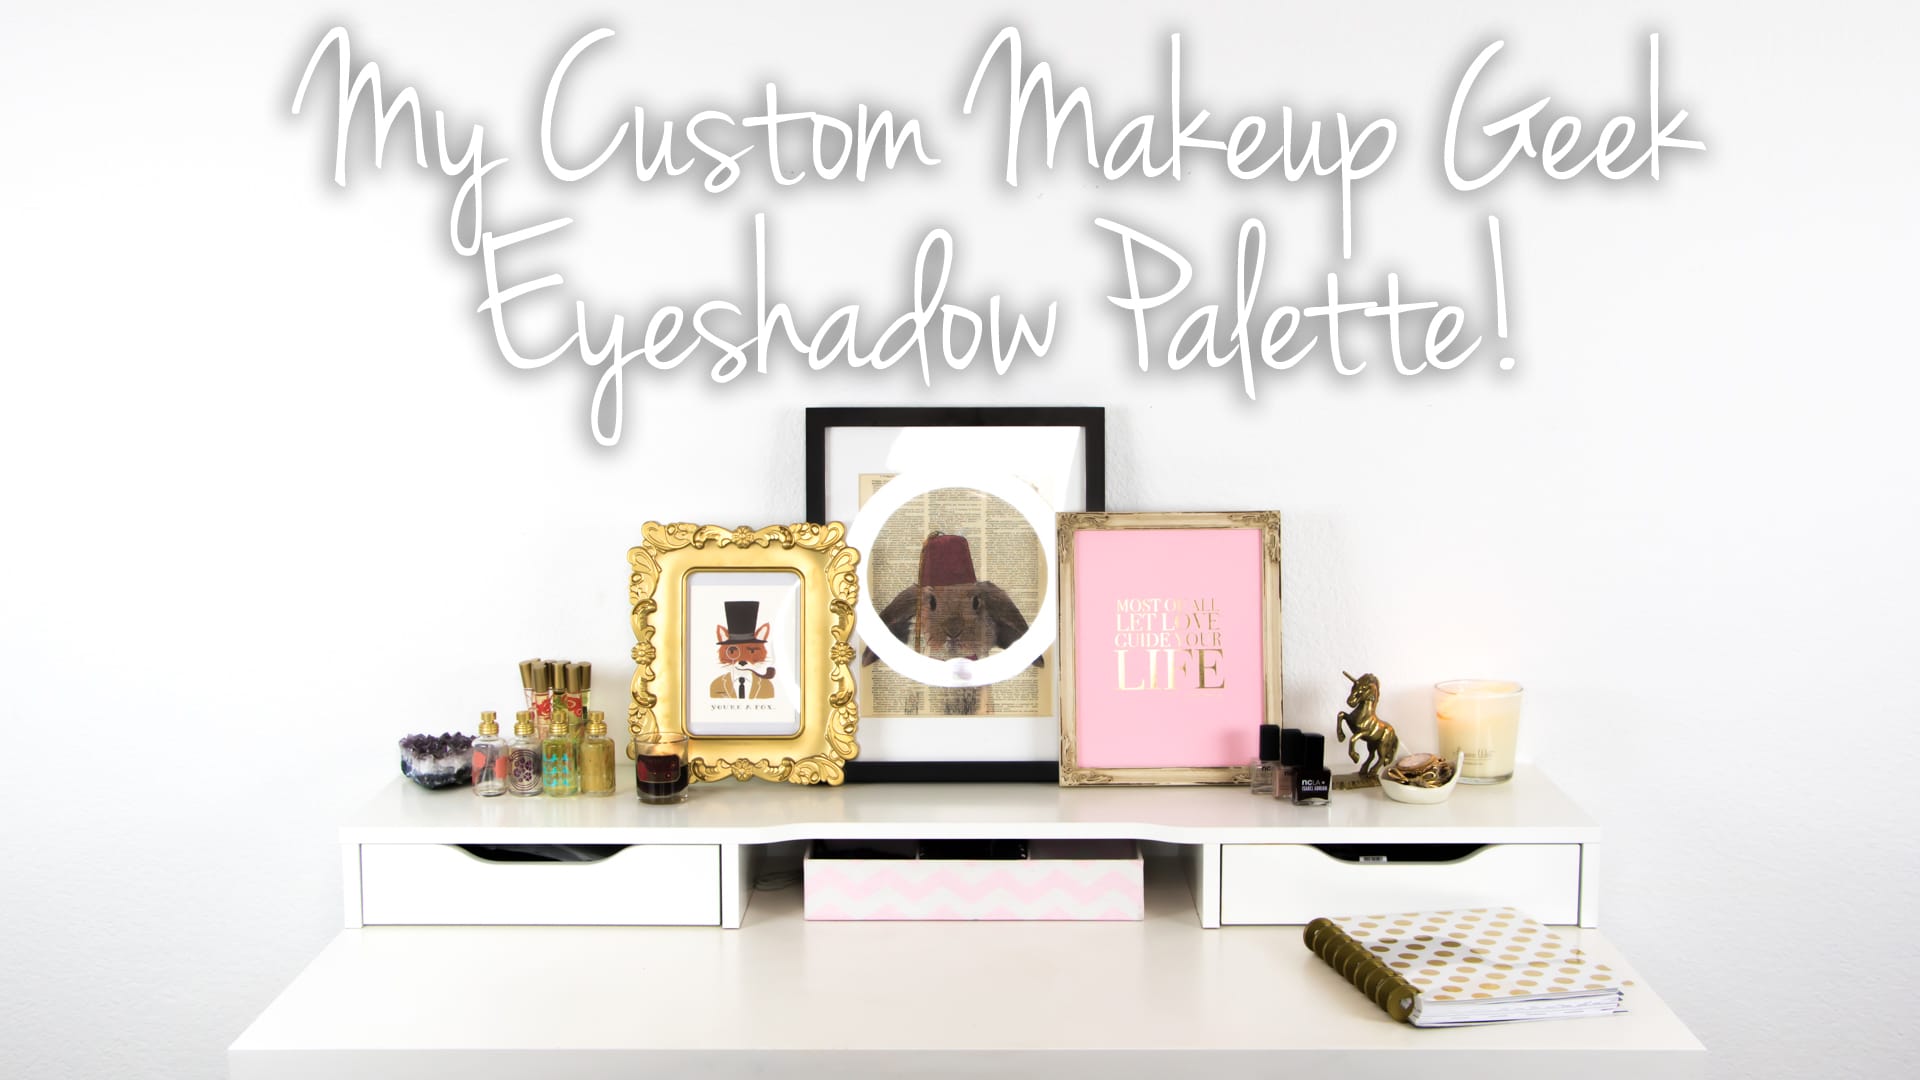 My Custom Makeup Geek Eyeshadow Palette Video